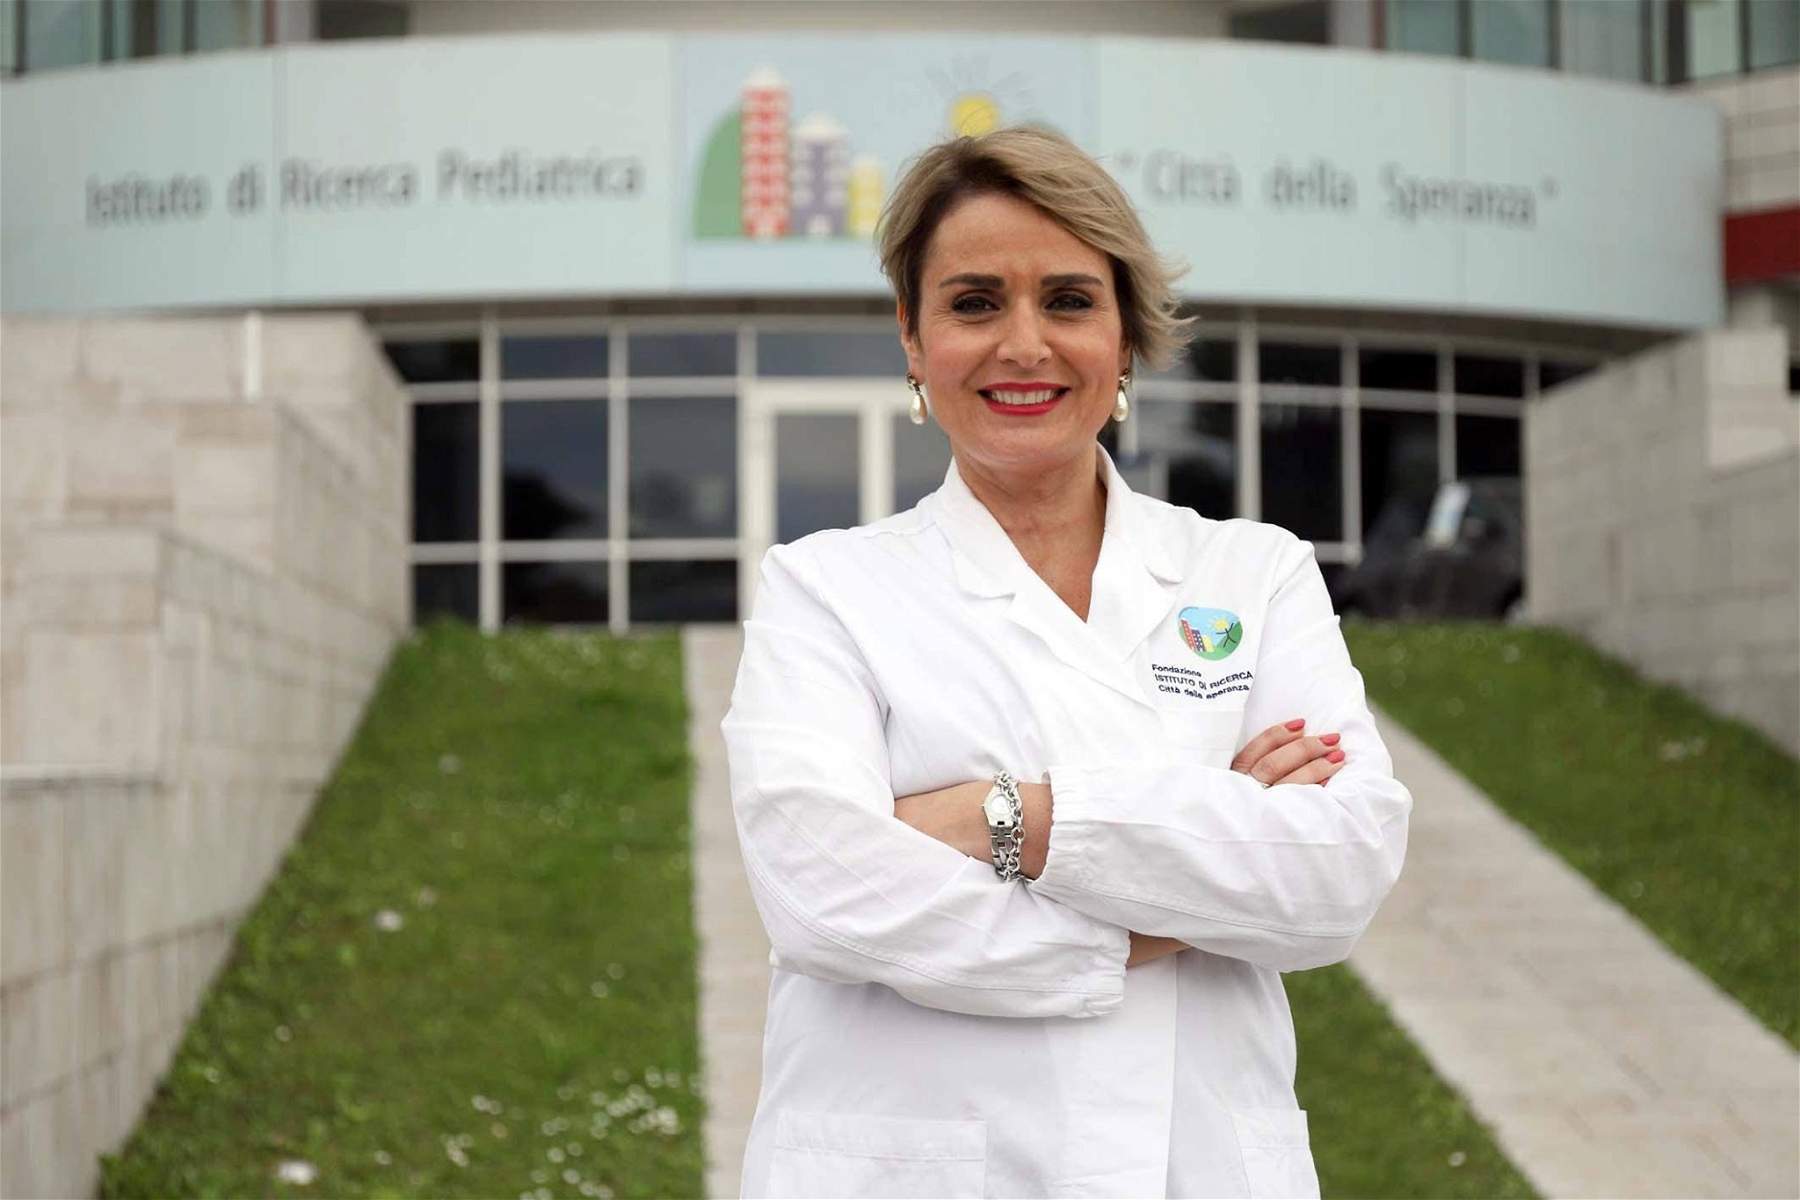 Immunologist Antonella Viola against closures: irrational, blind, absurd decision